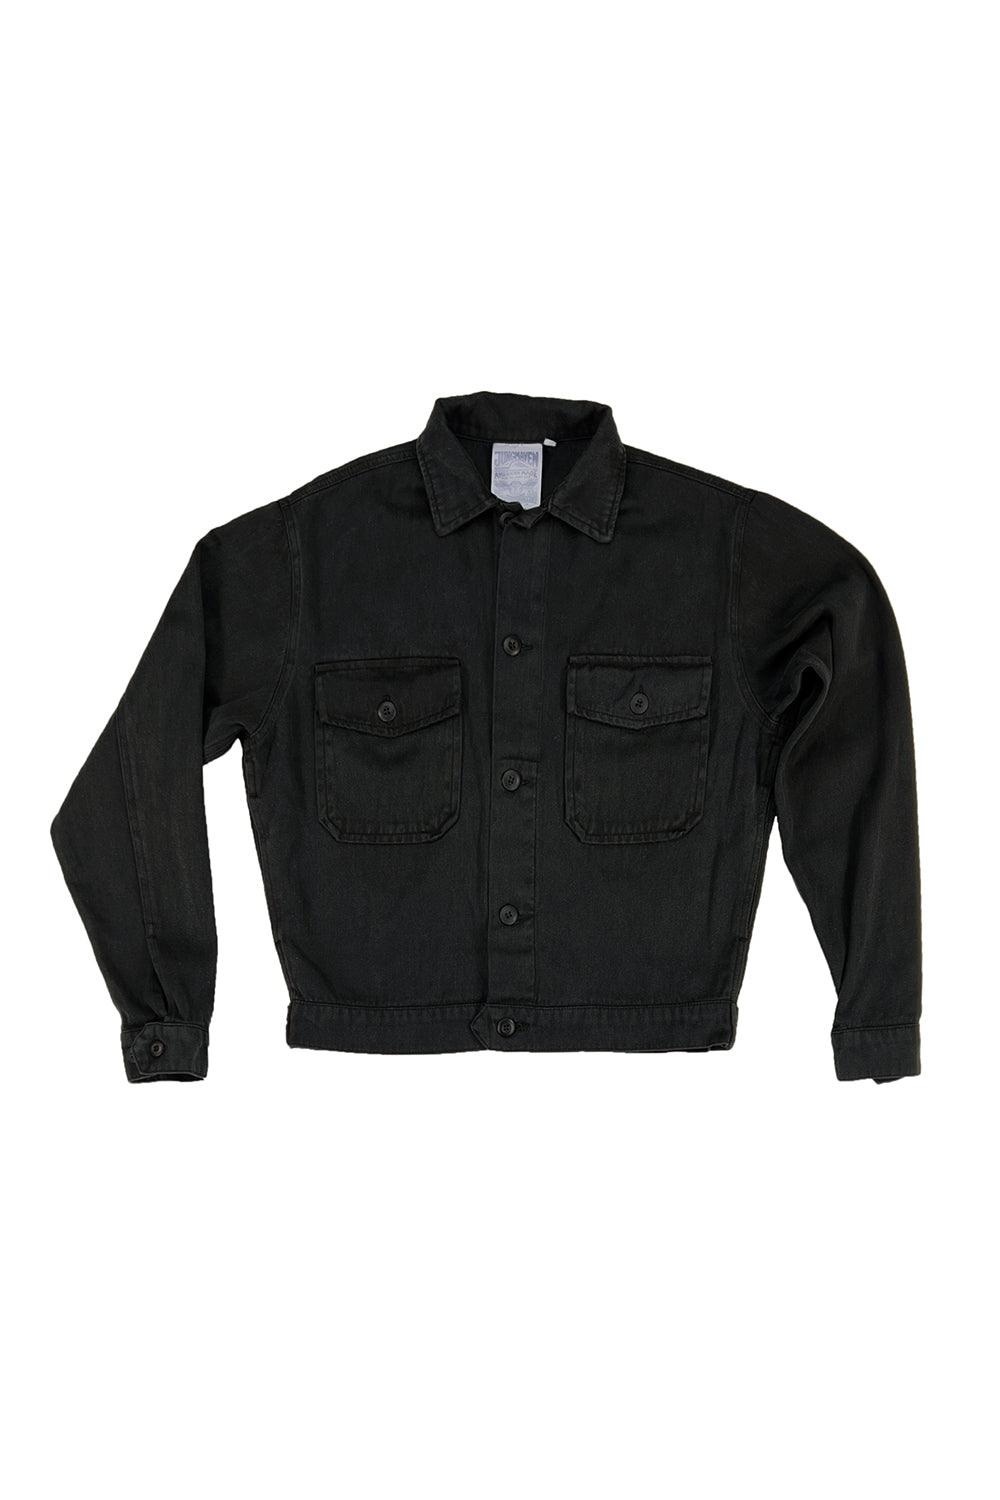 Mechanic Jacket | Jungmaven Hemp Clothing & Accessories / Color: Black